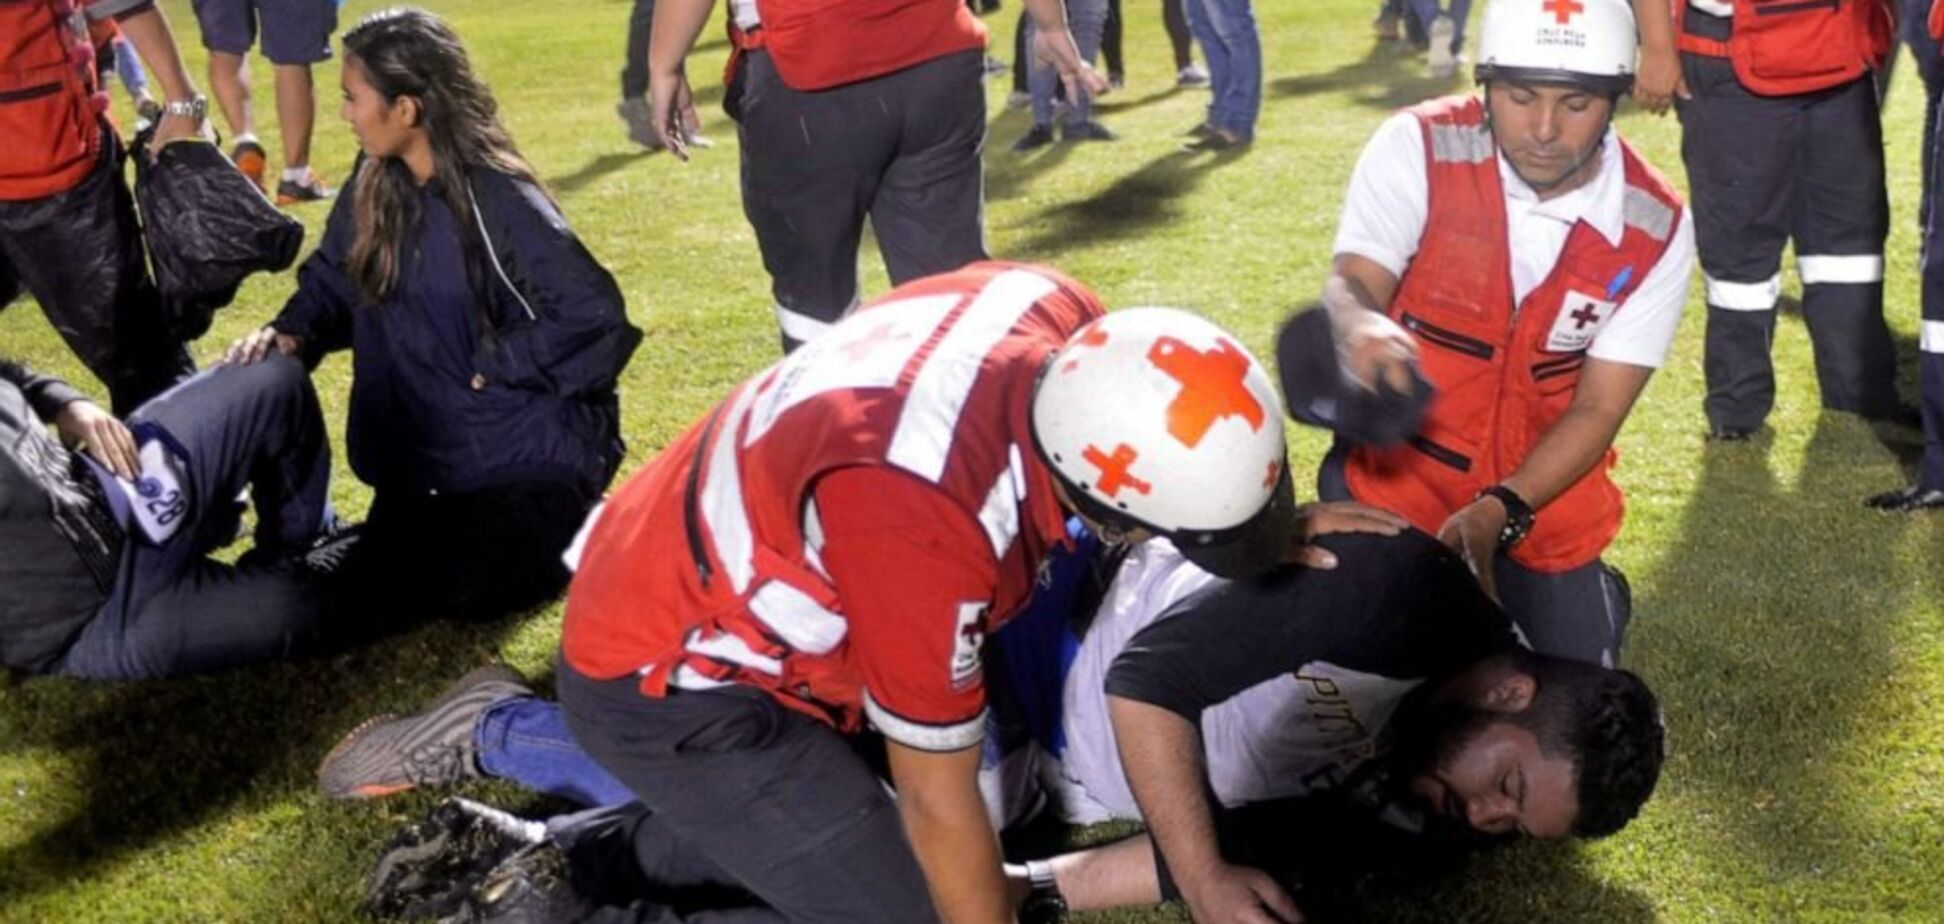 Нападение на команду: в Америке футбольный матч завершился трагедией - есть погибшие